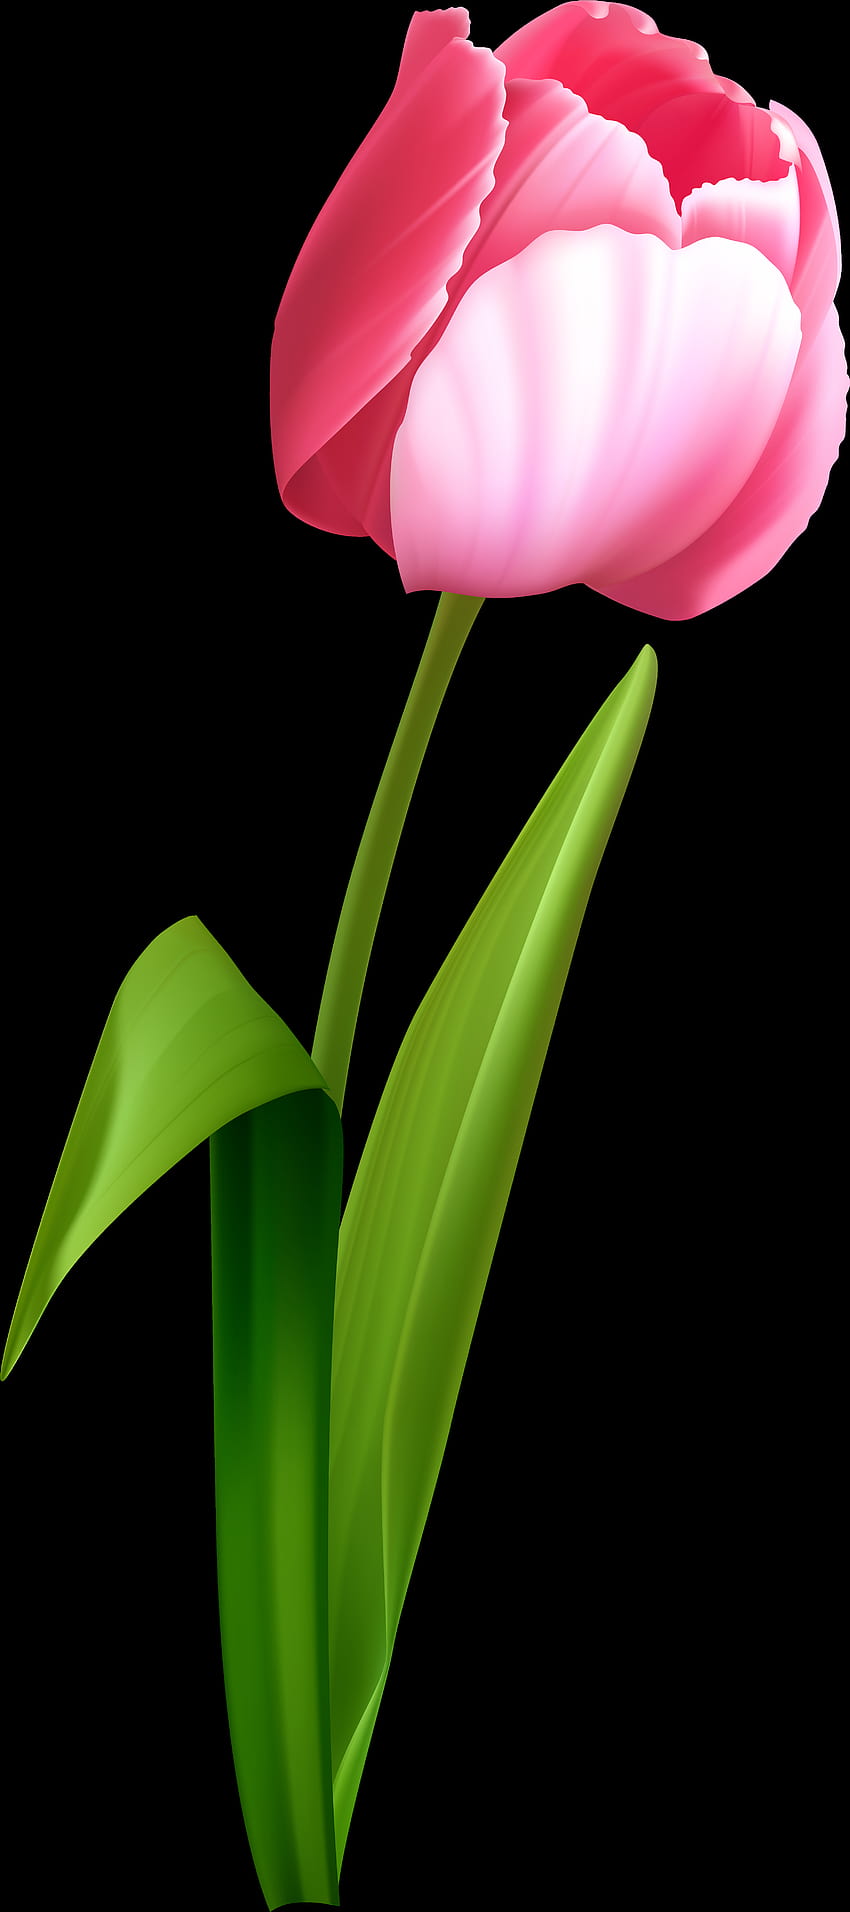 Tulip Portable Network Graphics Clip art Trasparenza, tulipano primaverile Sfondo del telefono HD